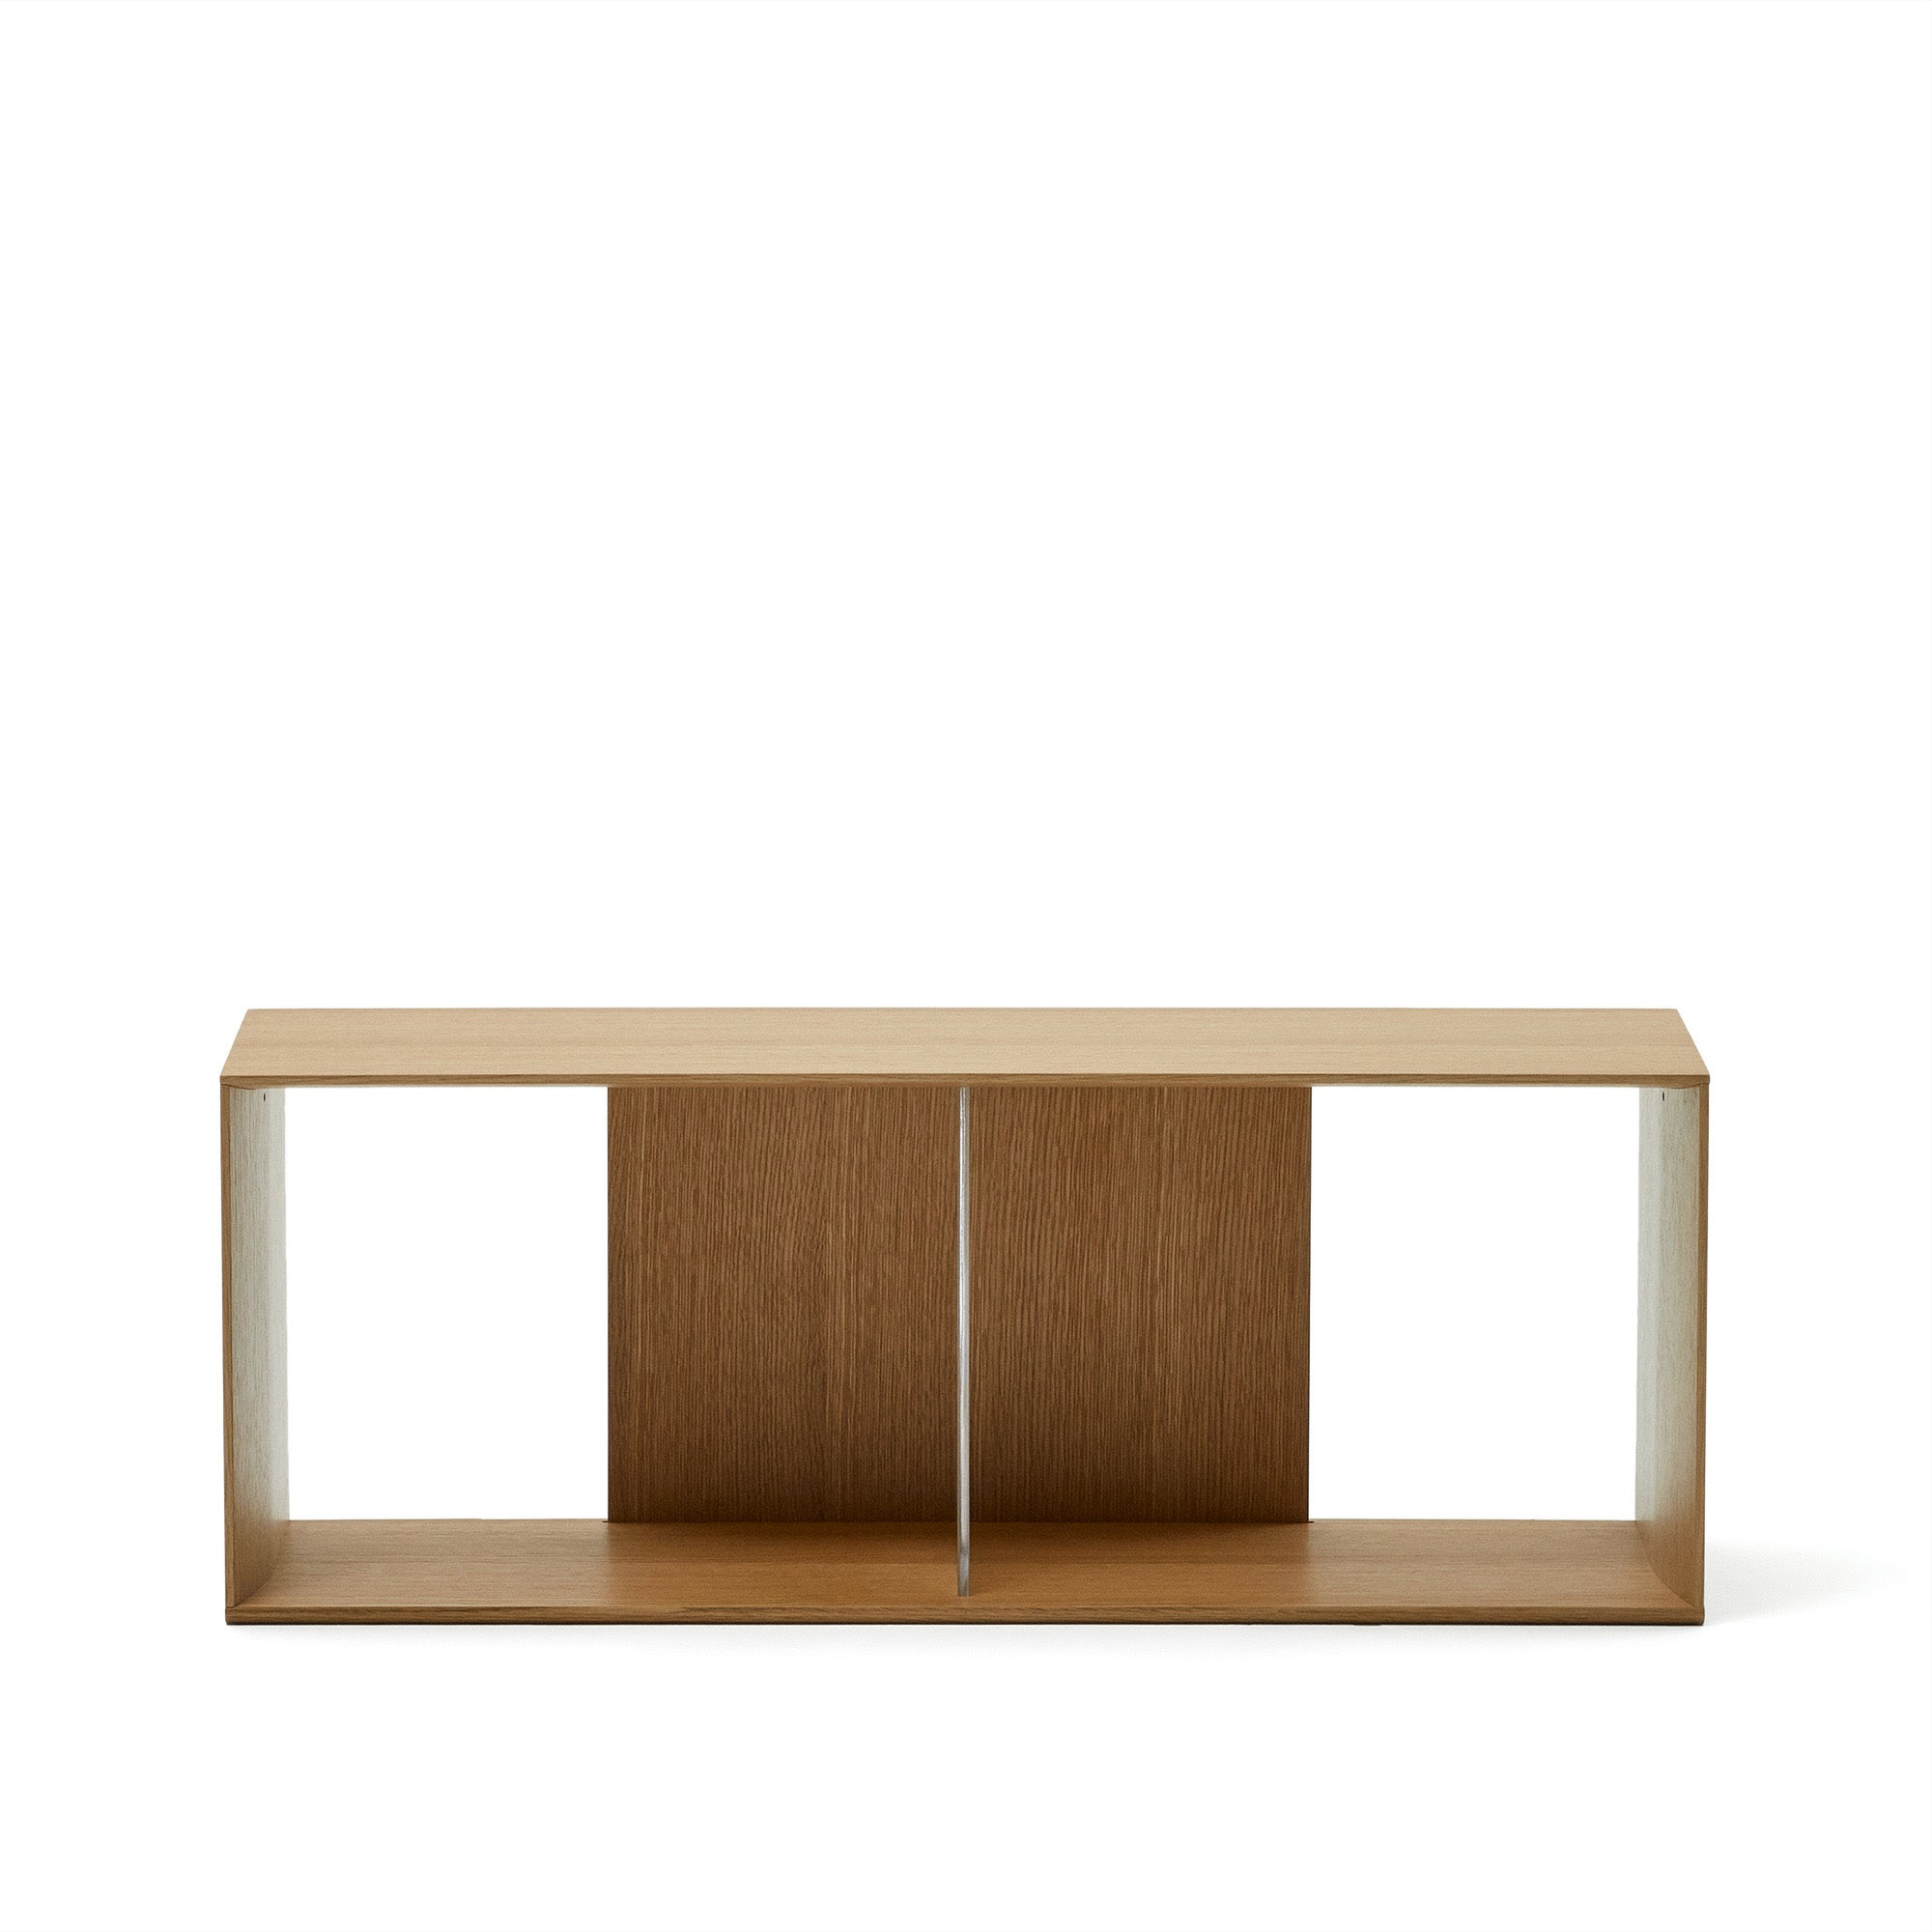 Litto large shelf module in oak veneer, 101 x 38 cm